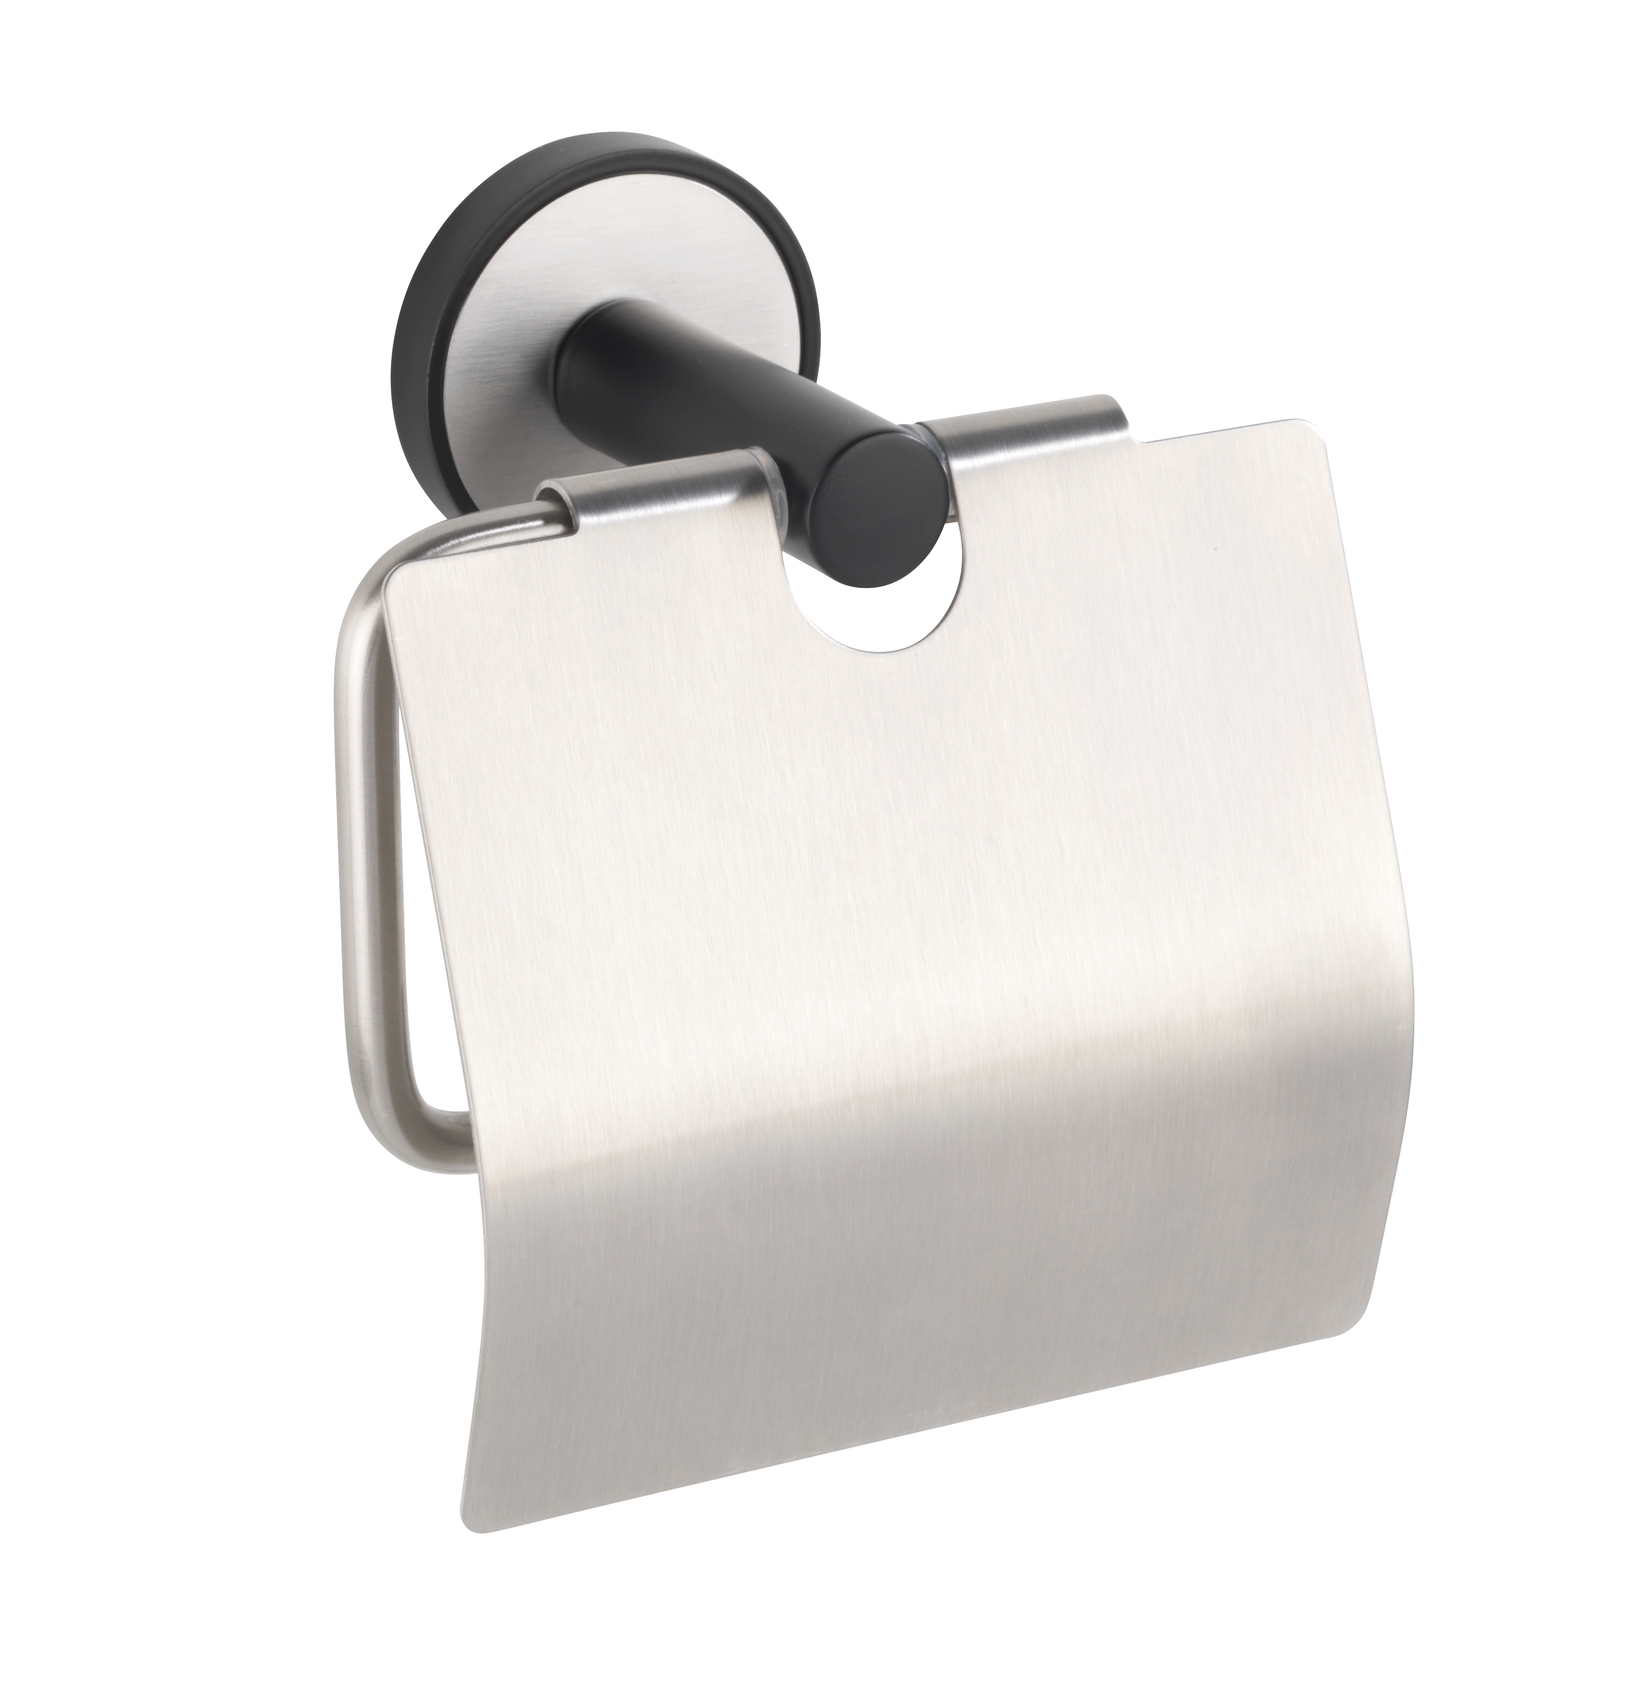 Wenko UV-Loc® Toilettenpapierhalter Udine 14,5 x 12,5 x 6,5 cm, mit Deckel, silber matt/schwarz. Befestigen ohne bohren